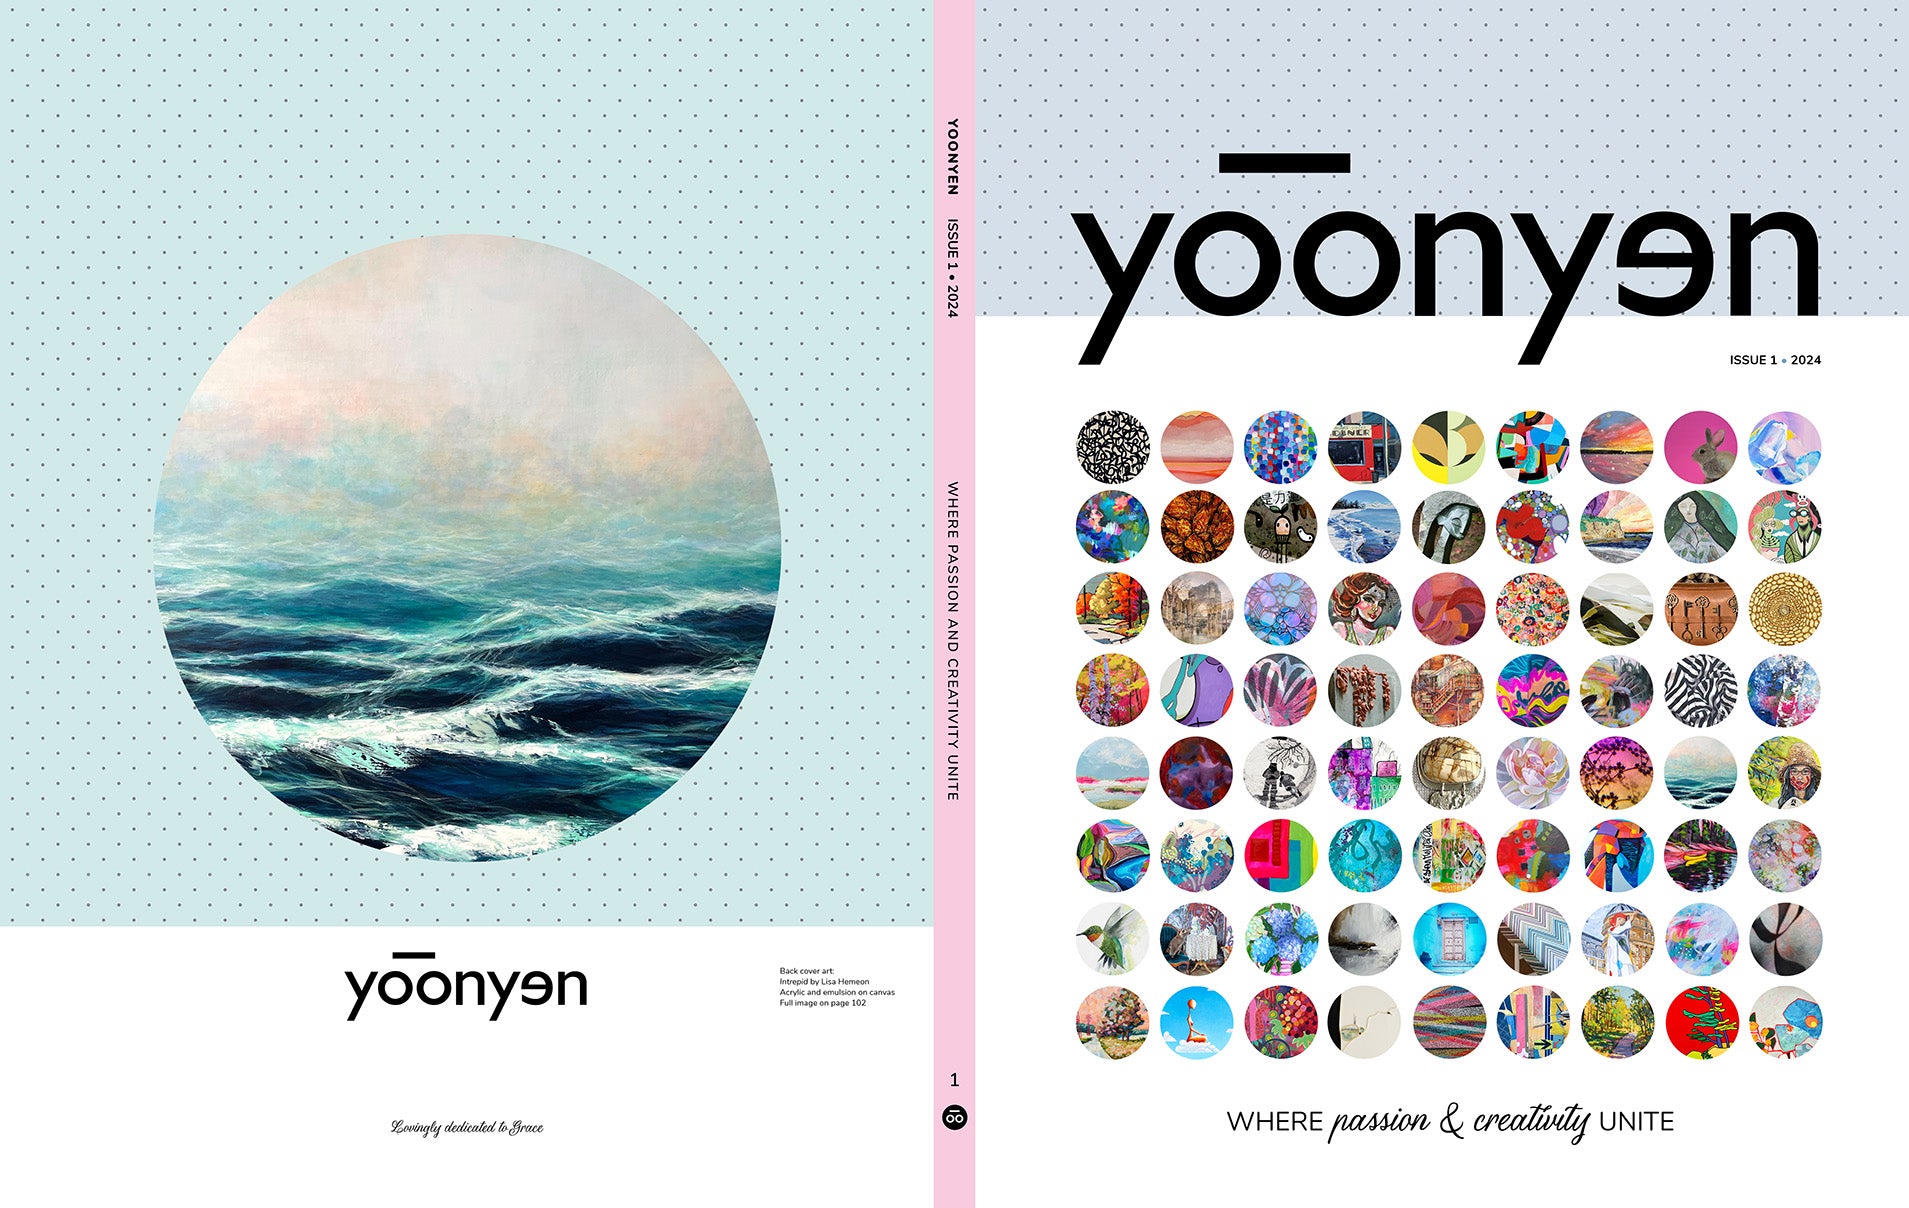 Yoonyen magazine